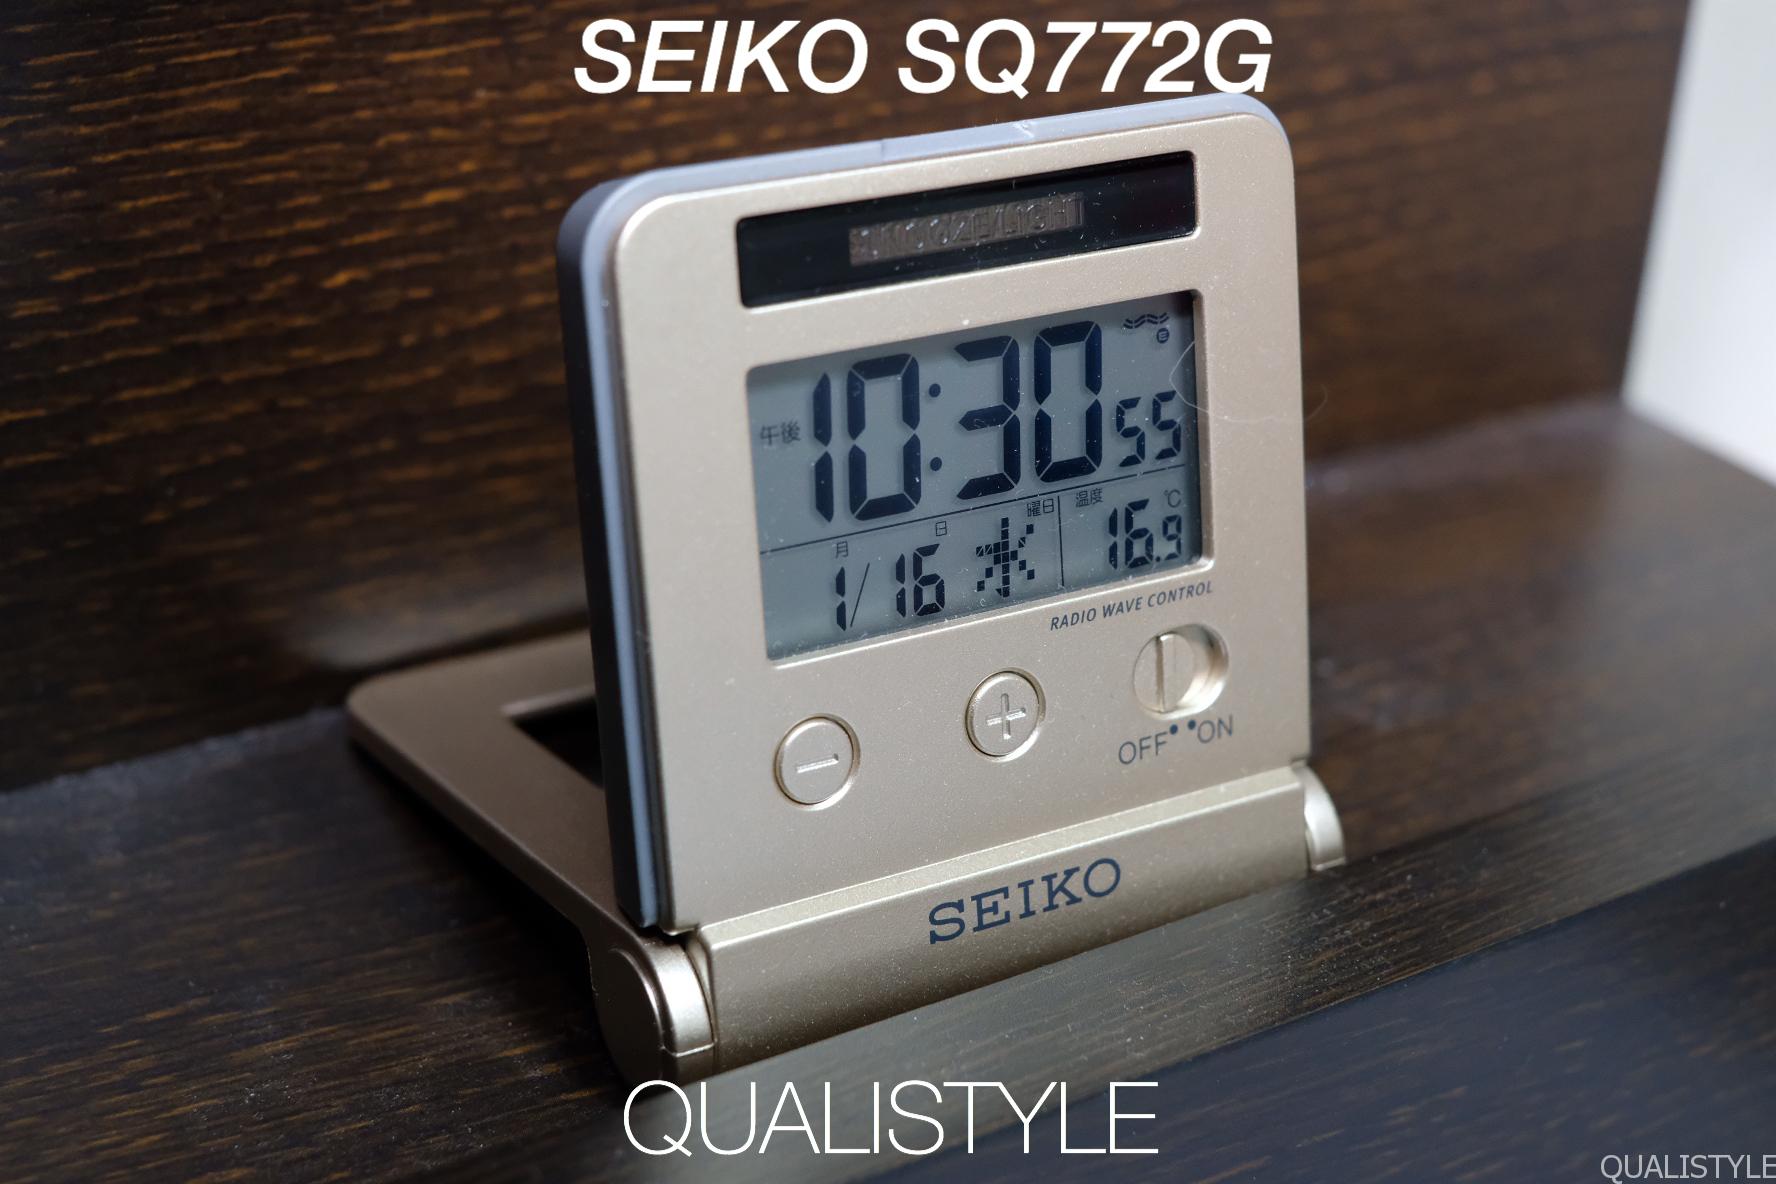 893円 【お気に入り】 SEIKO セイコー 目覚し時計 SQ772G